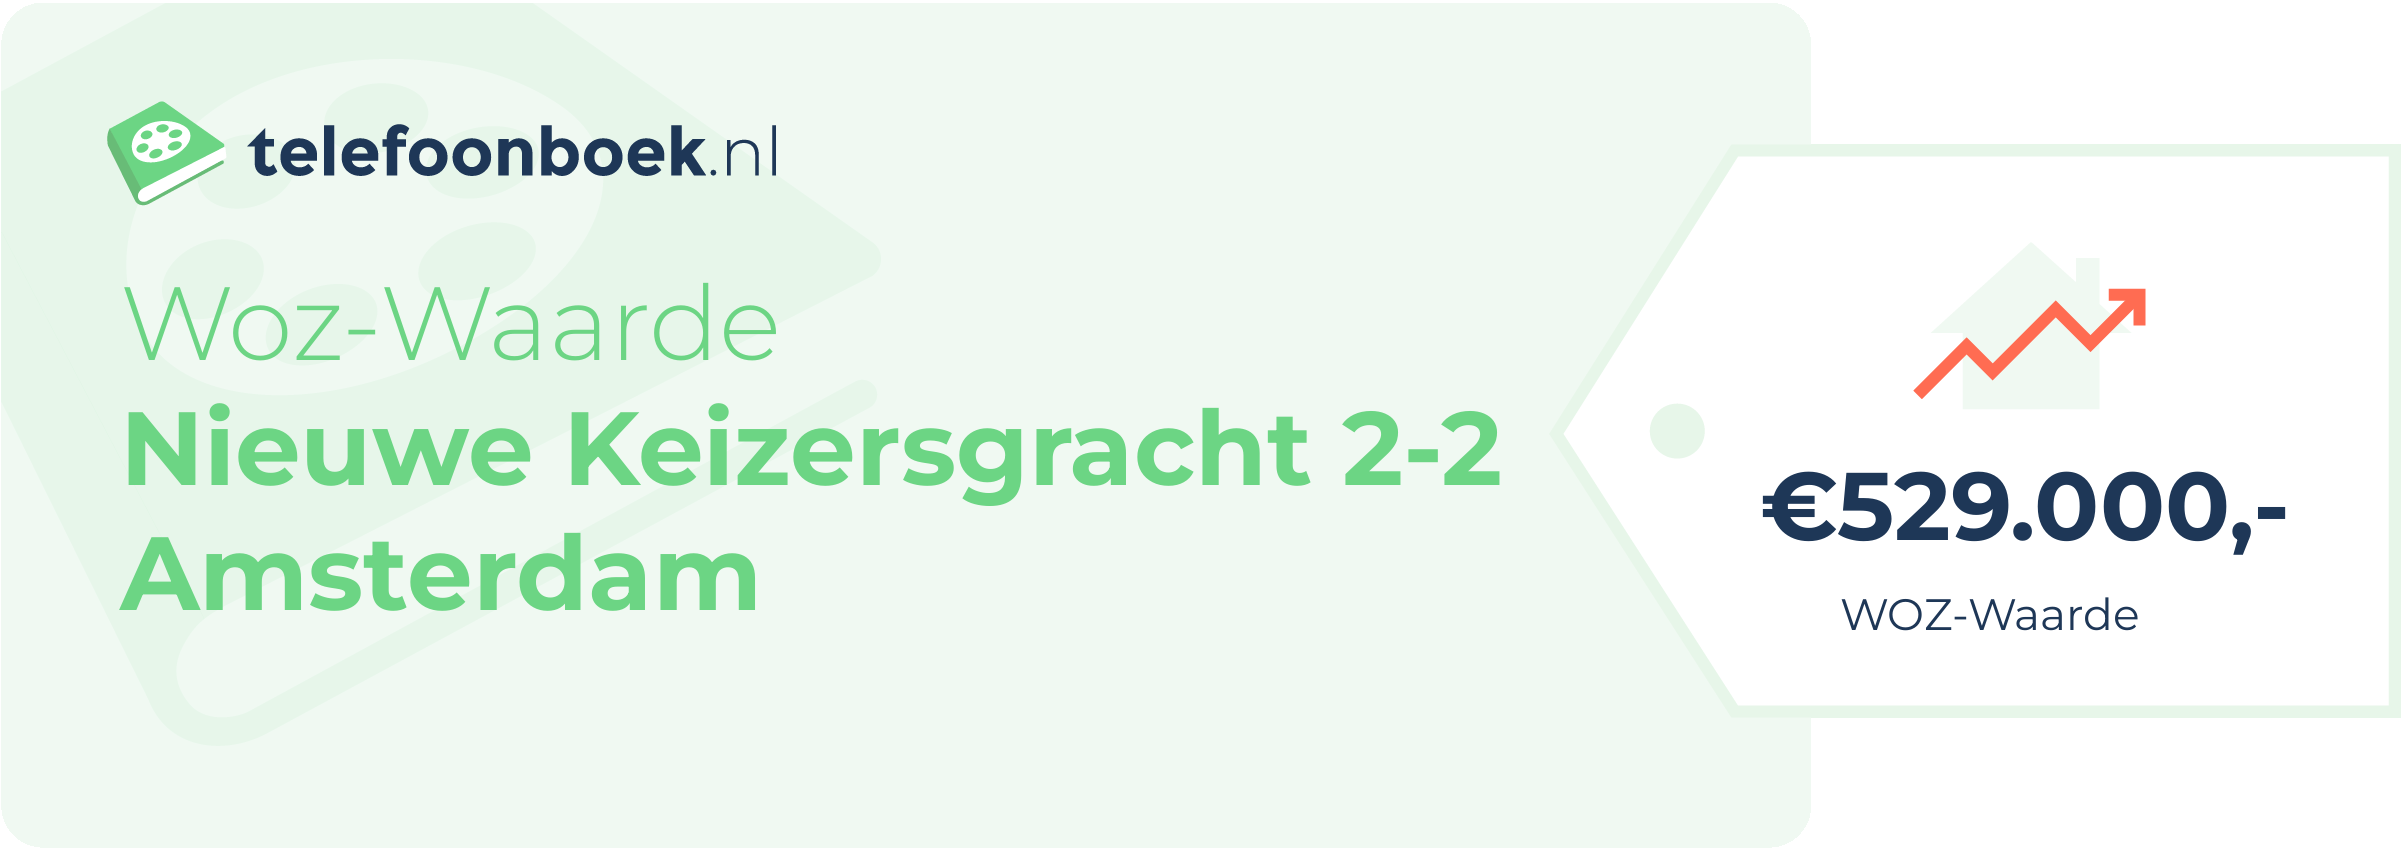 WOZ-waarde Nieuwe Keizersgracht 2-2 Amsterdam